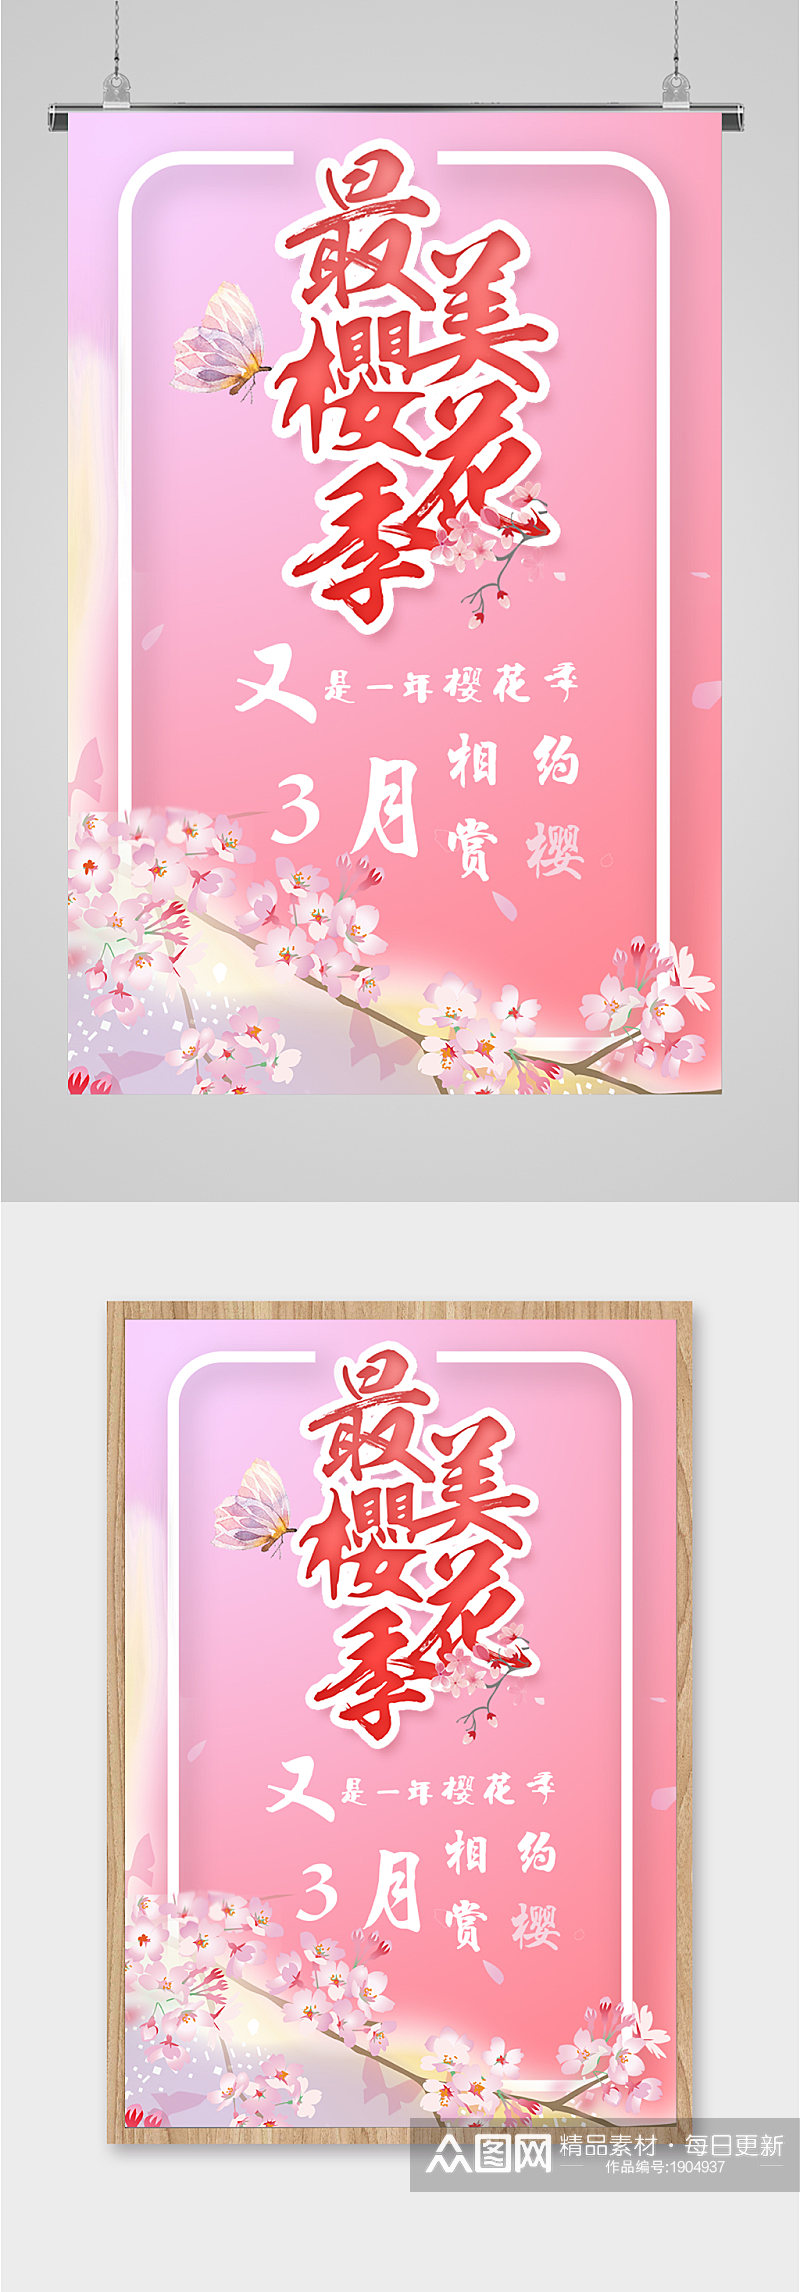 最美樱花季相约赏樱花海报素材